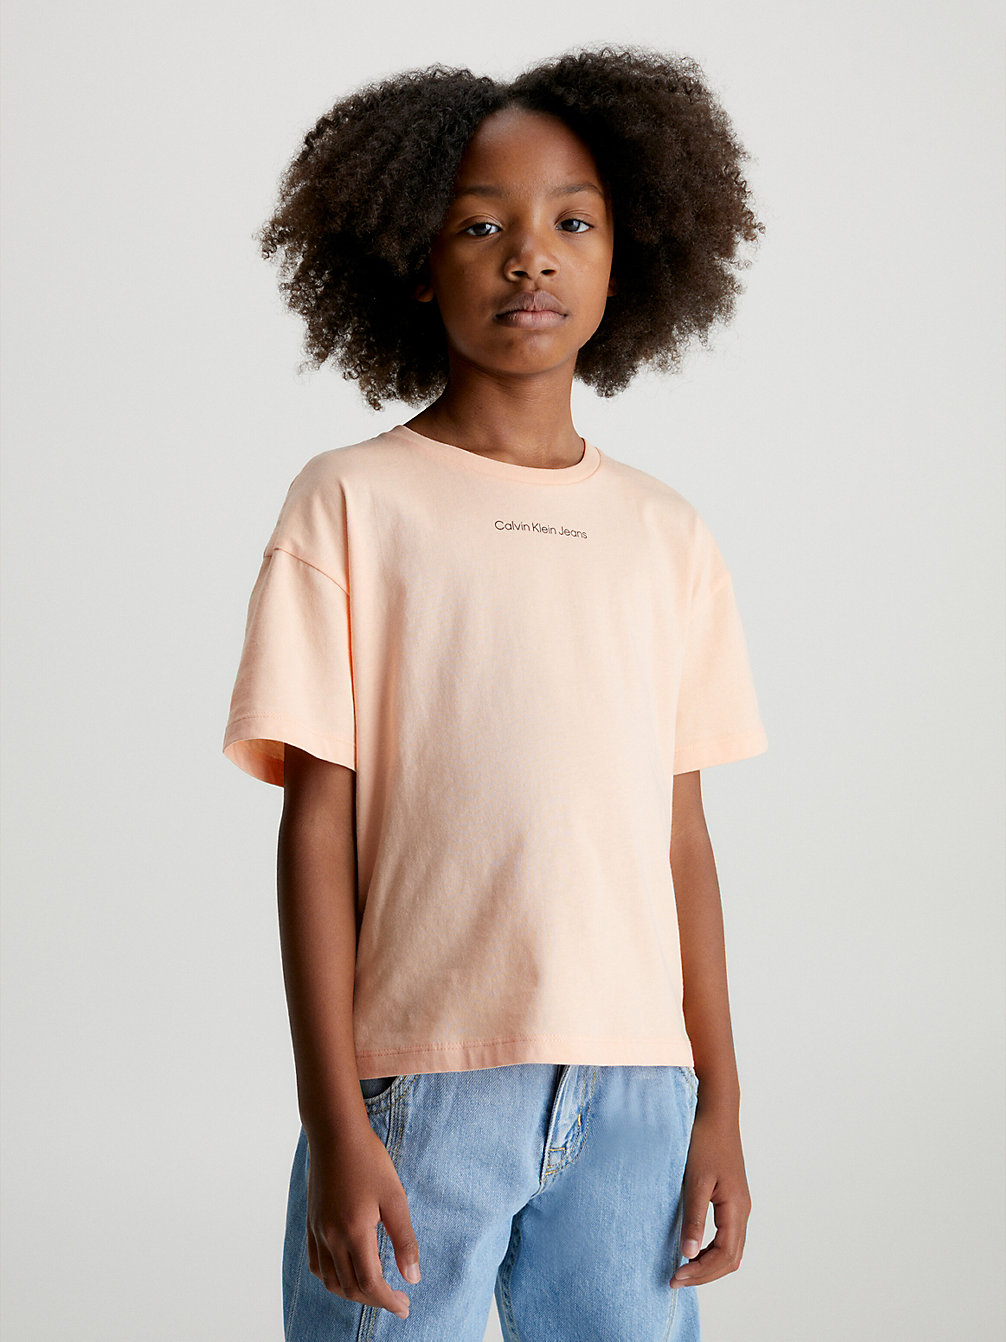 FRESH CANTALOUPE > Kastiges T-Shirt Aus Bio-Baumwolle > undefined girls - Calvin Klein